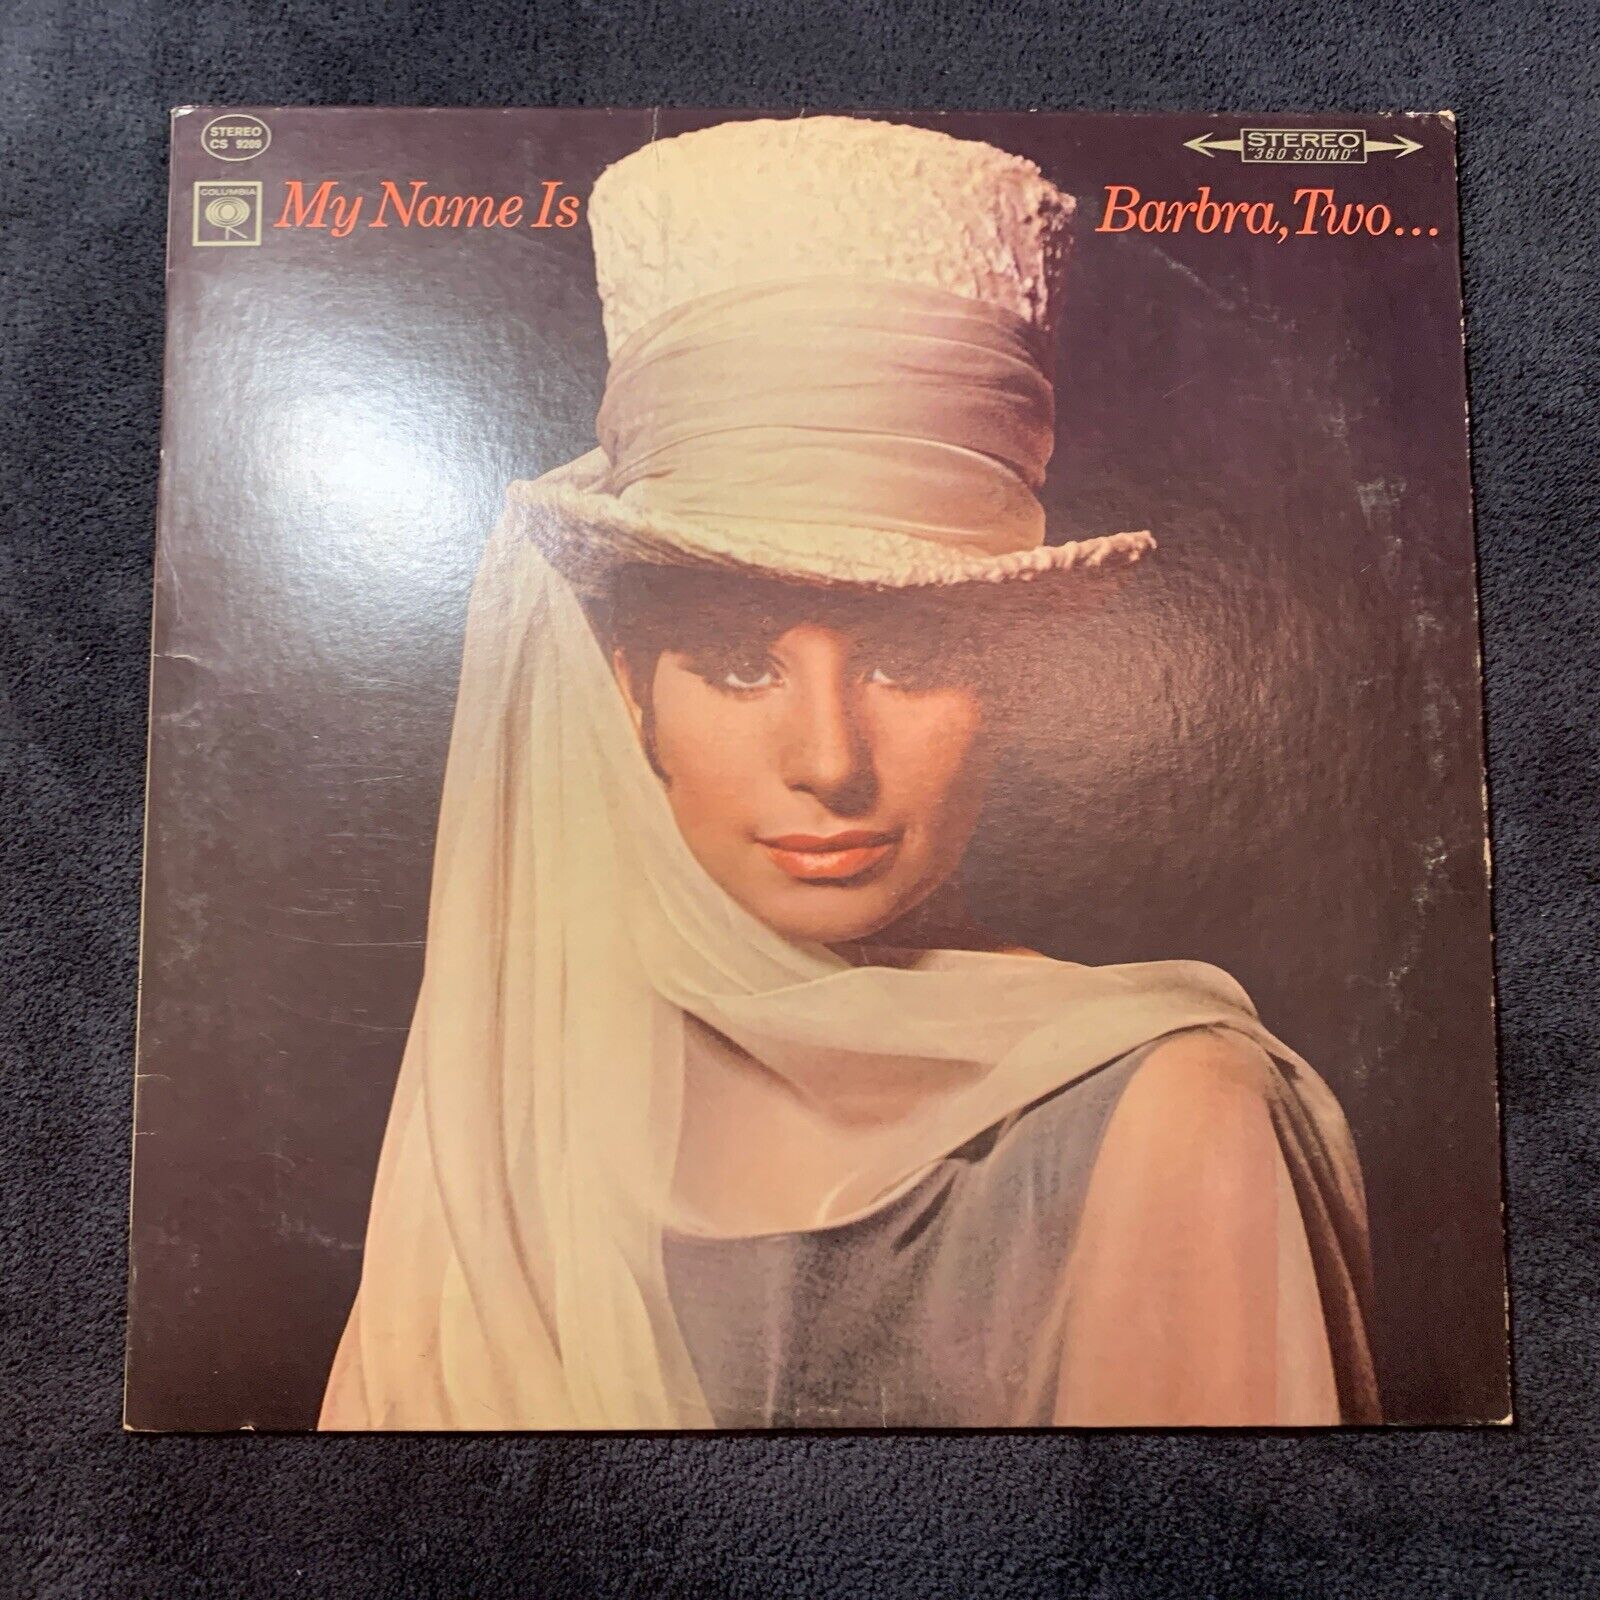 Barbra Streisand - My Name Is Barbra, Two... LP Vinyl - Columbia CS 9209